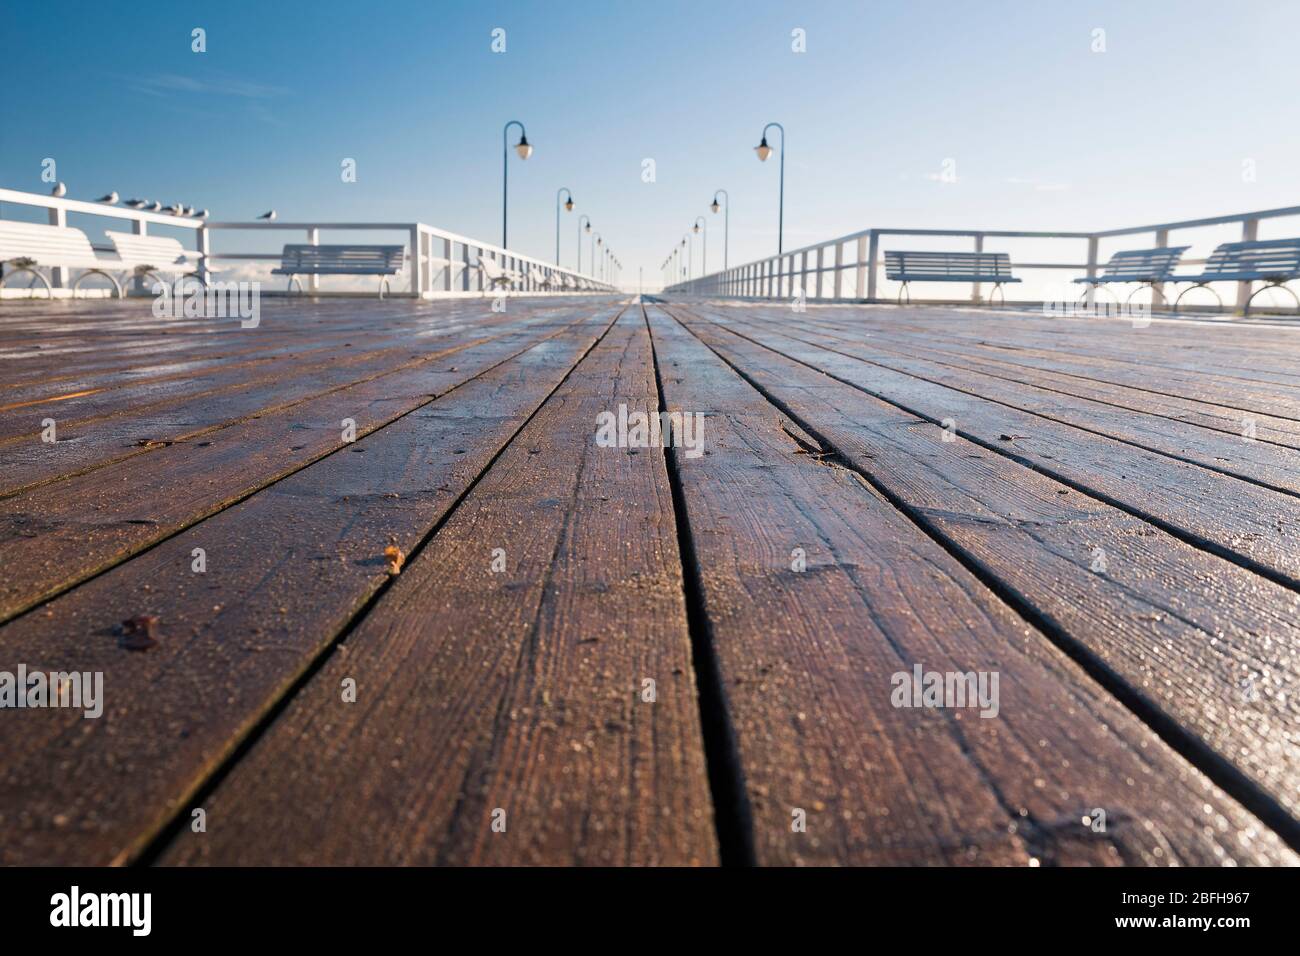 Pier während eines sonnigen Tages - eine Nahaufnahme von Holzbrettern, Möwen auf einem Geländer Stockfoto